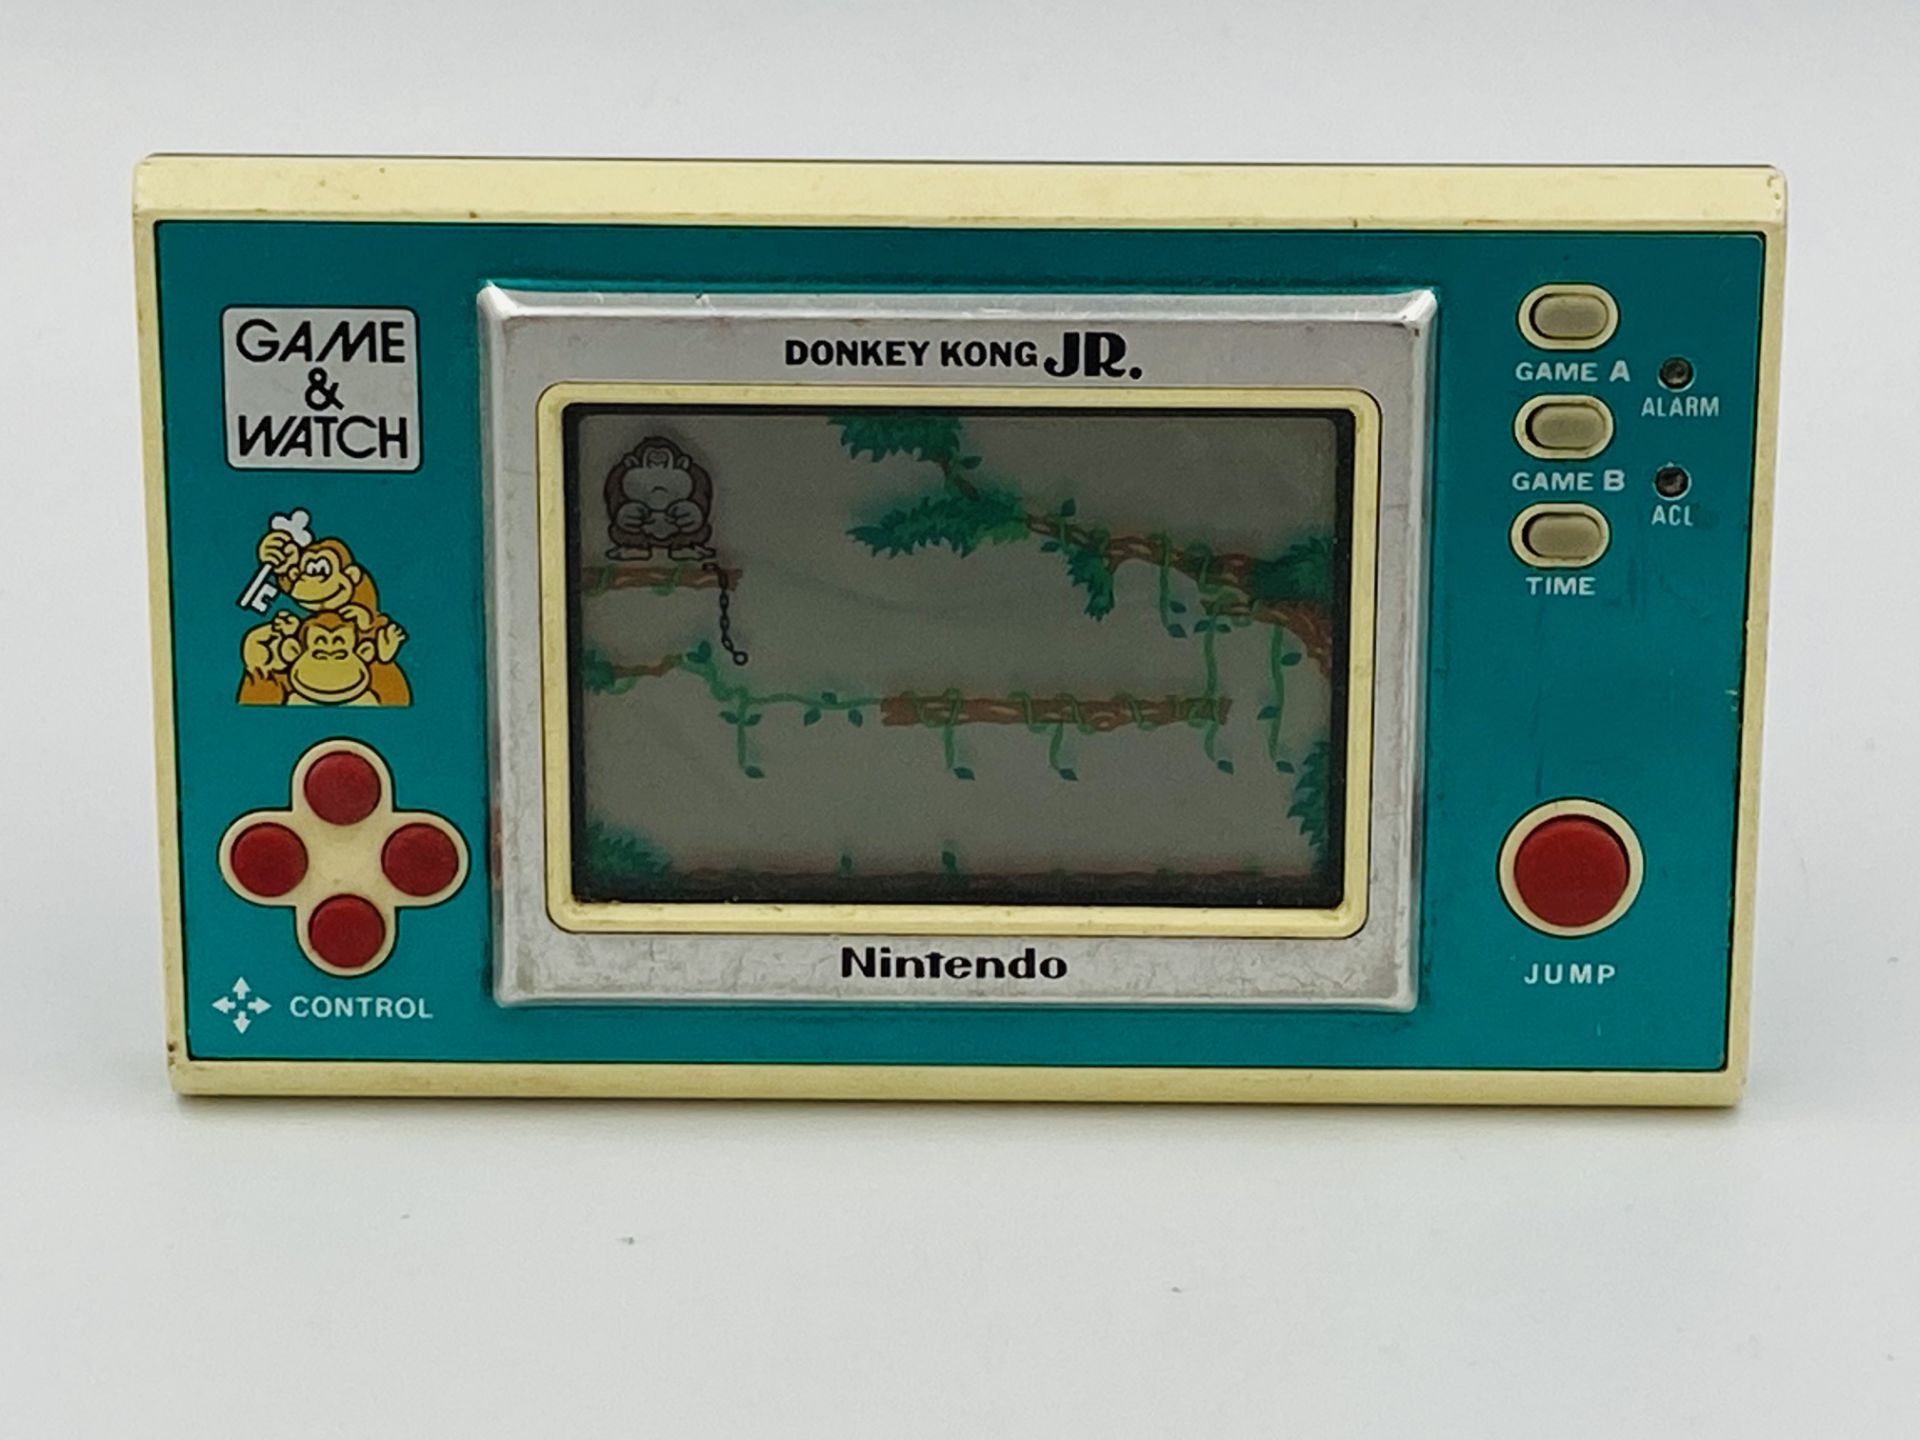 Nintendo Game & Watch Donkey Kong Jr, model DJ-101 - Image 3 of 3